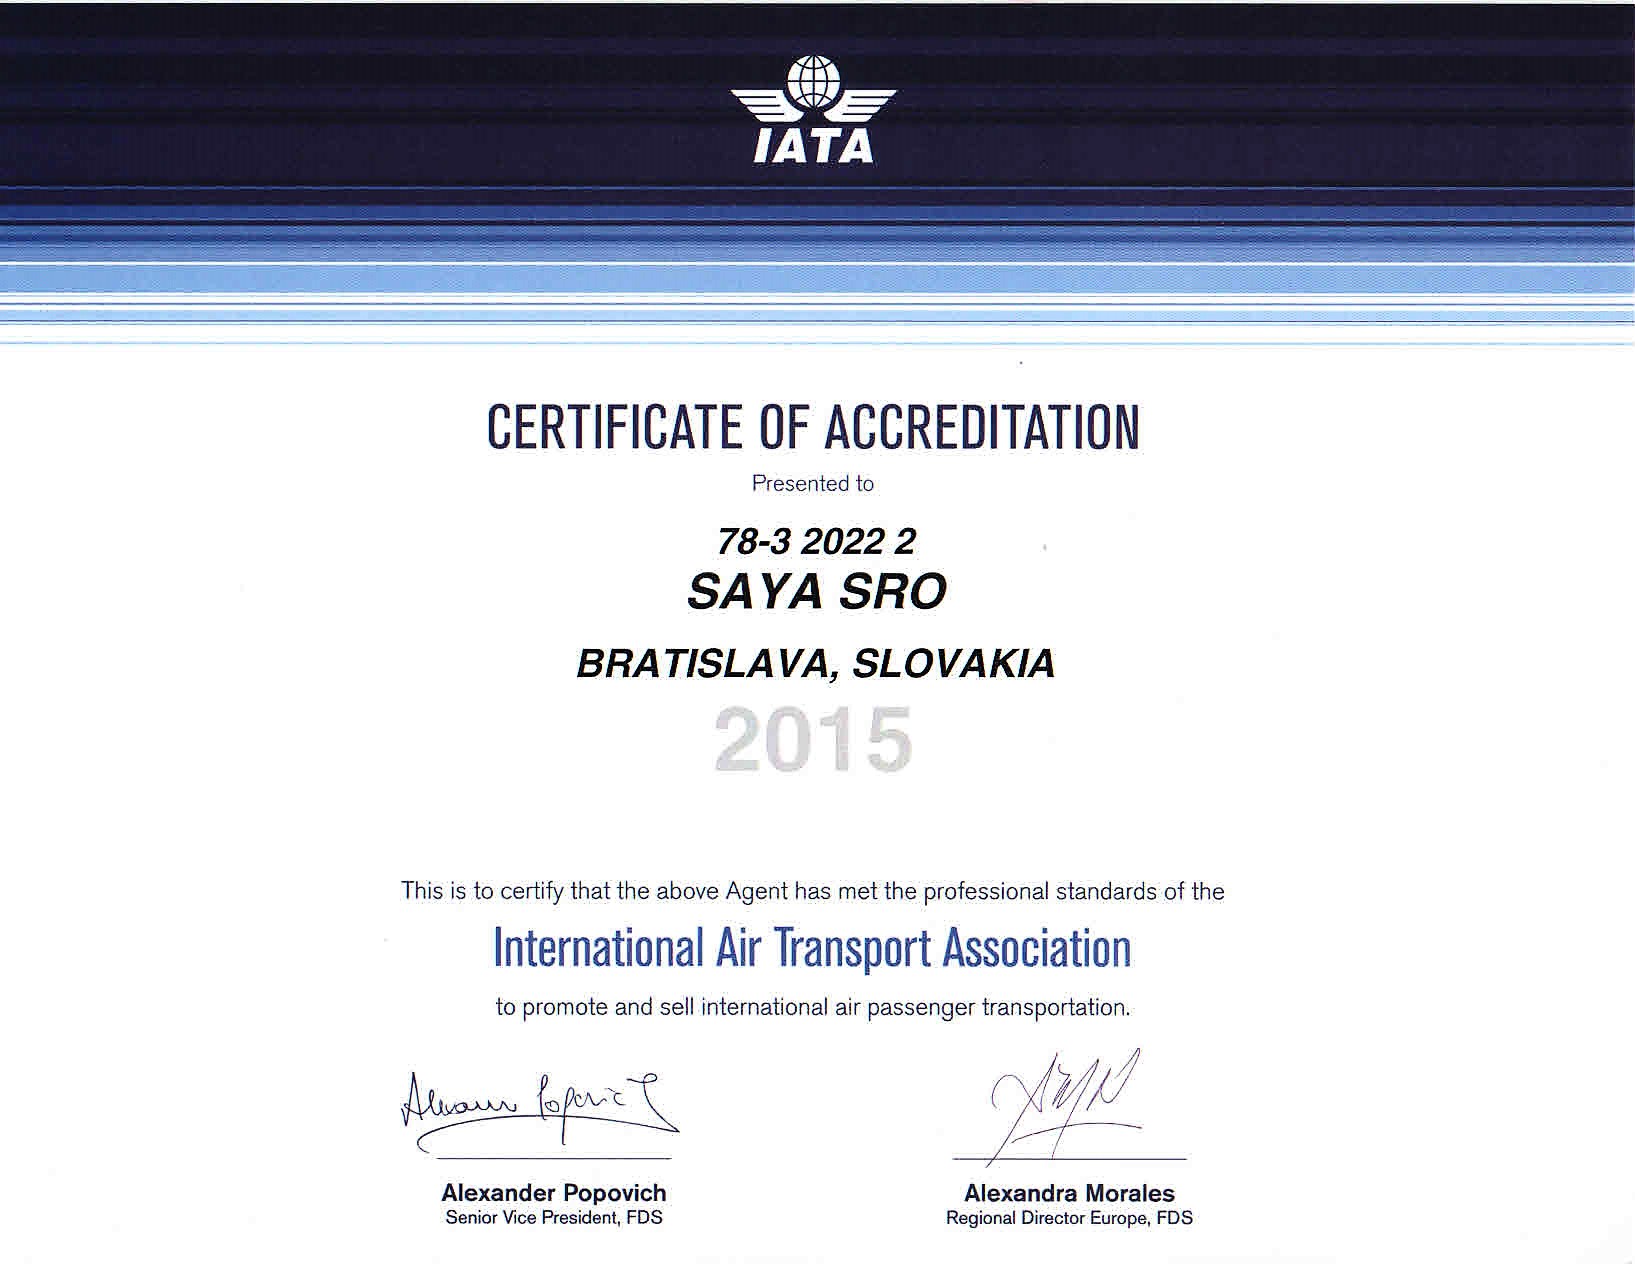 IATA 2015